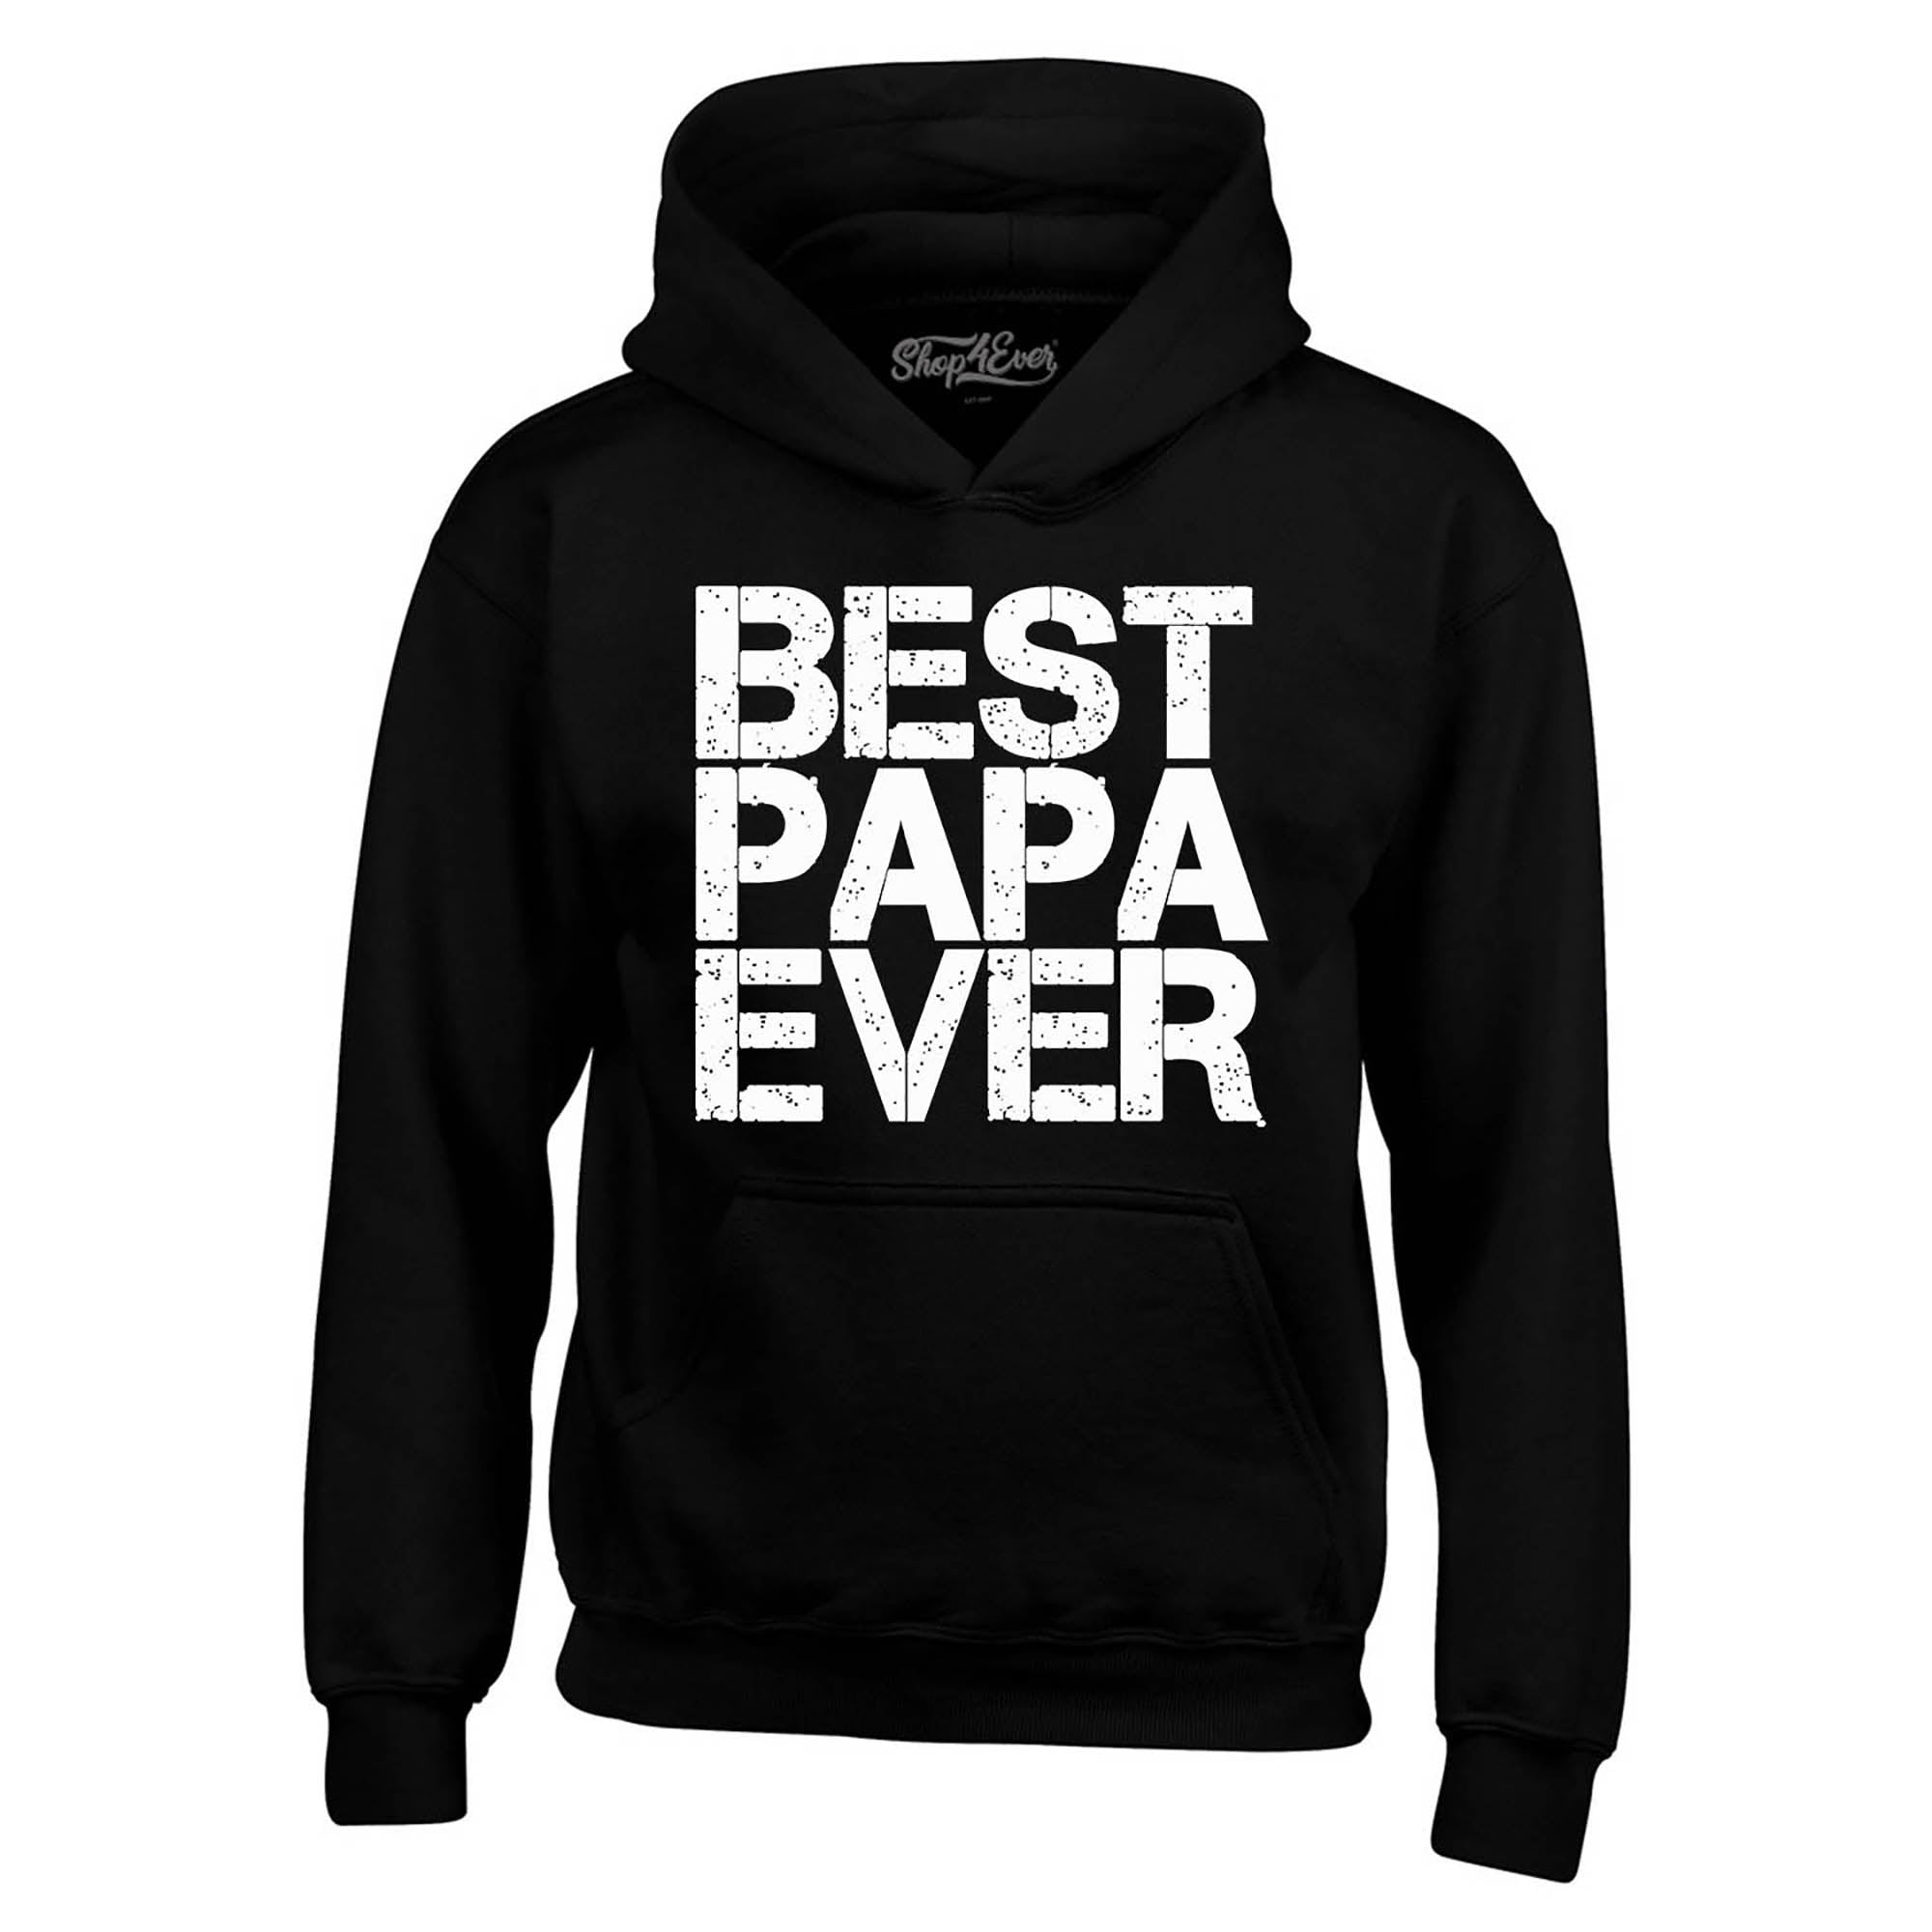 Best Papa Ever Hoodies Sweatshirts